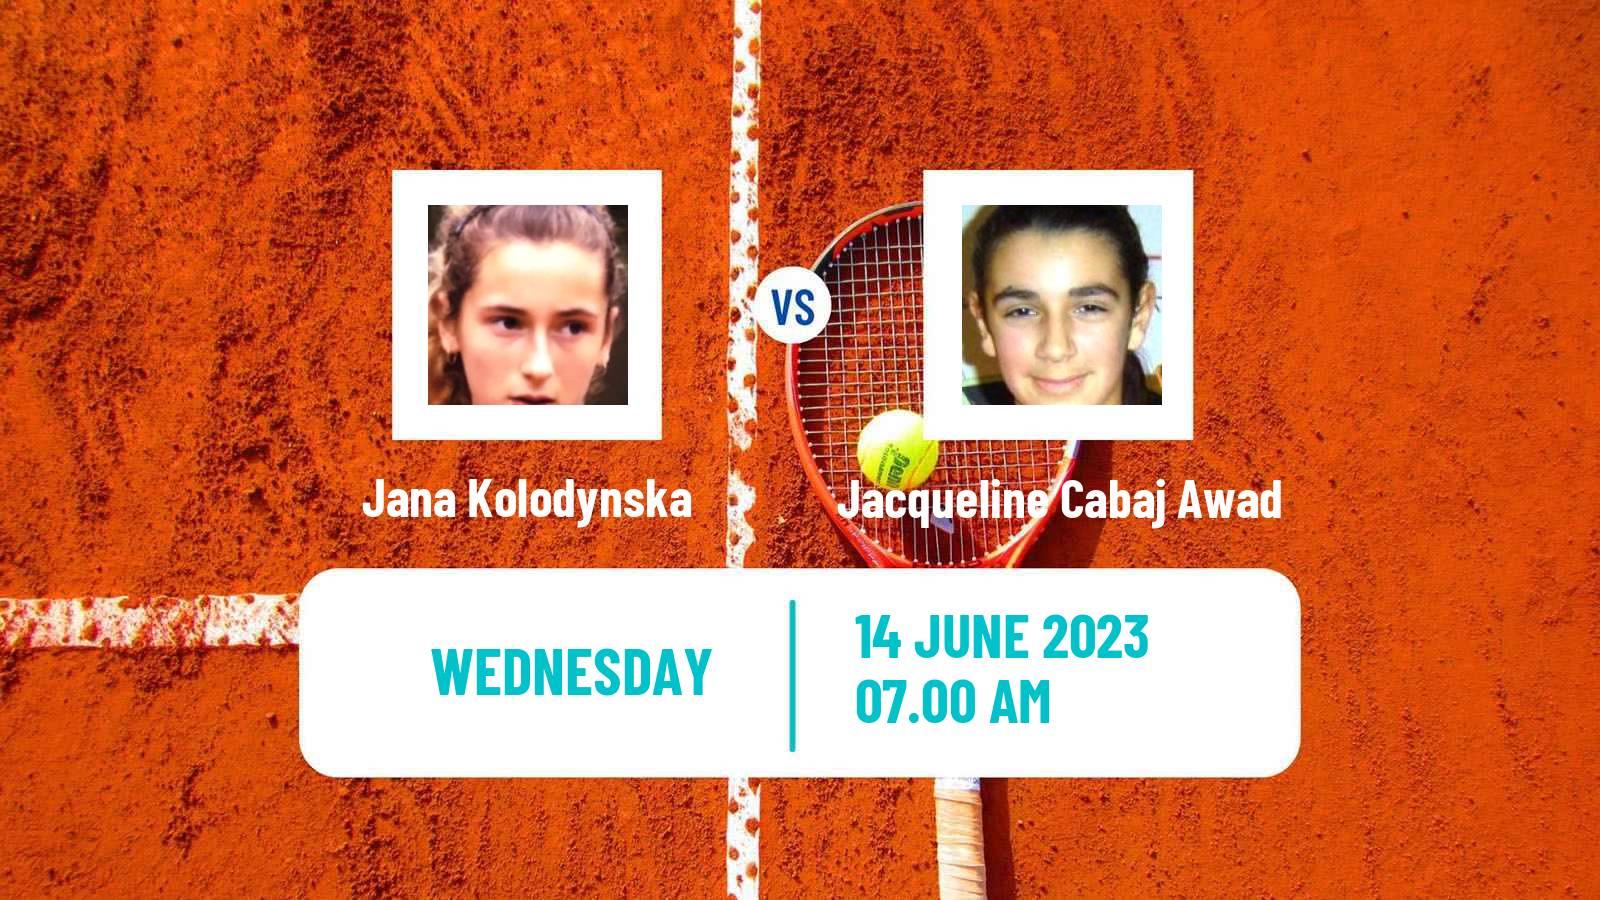 Tennis ITF W60 Madrid Women Jana Kolodynska - Jacqueline Cabaj Awad